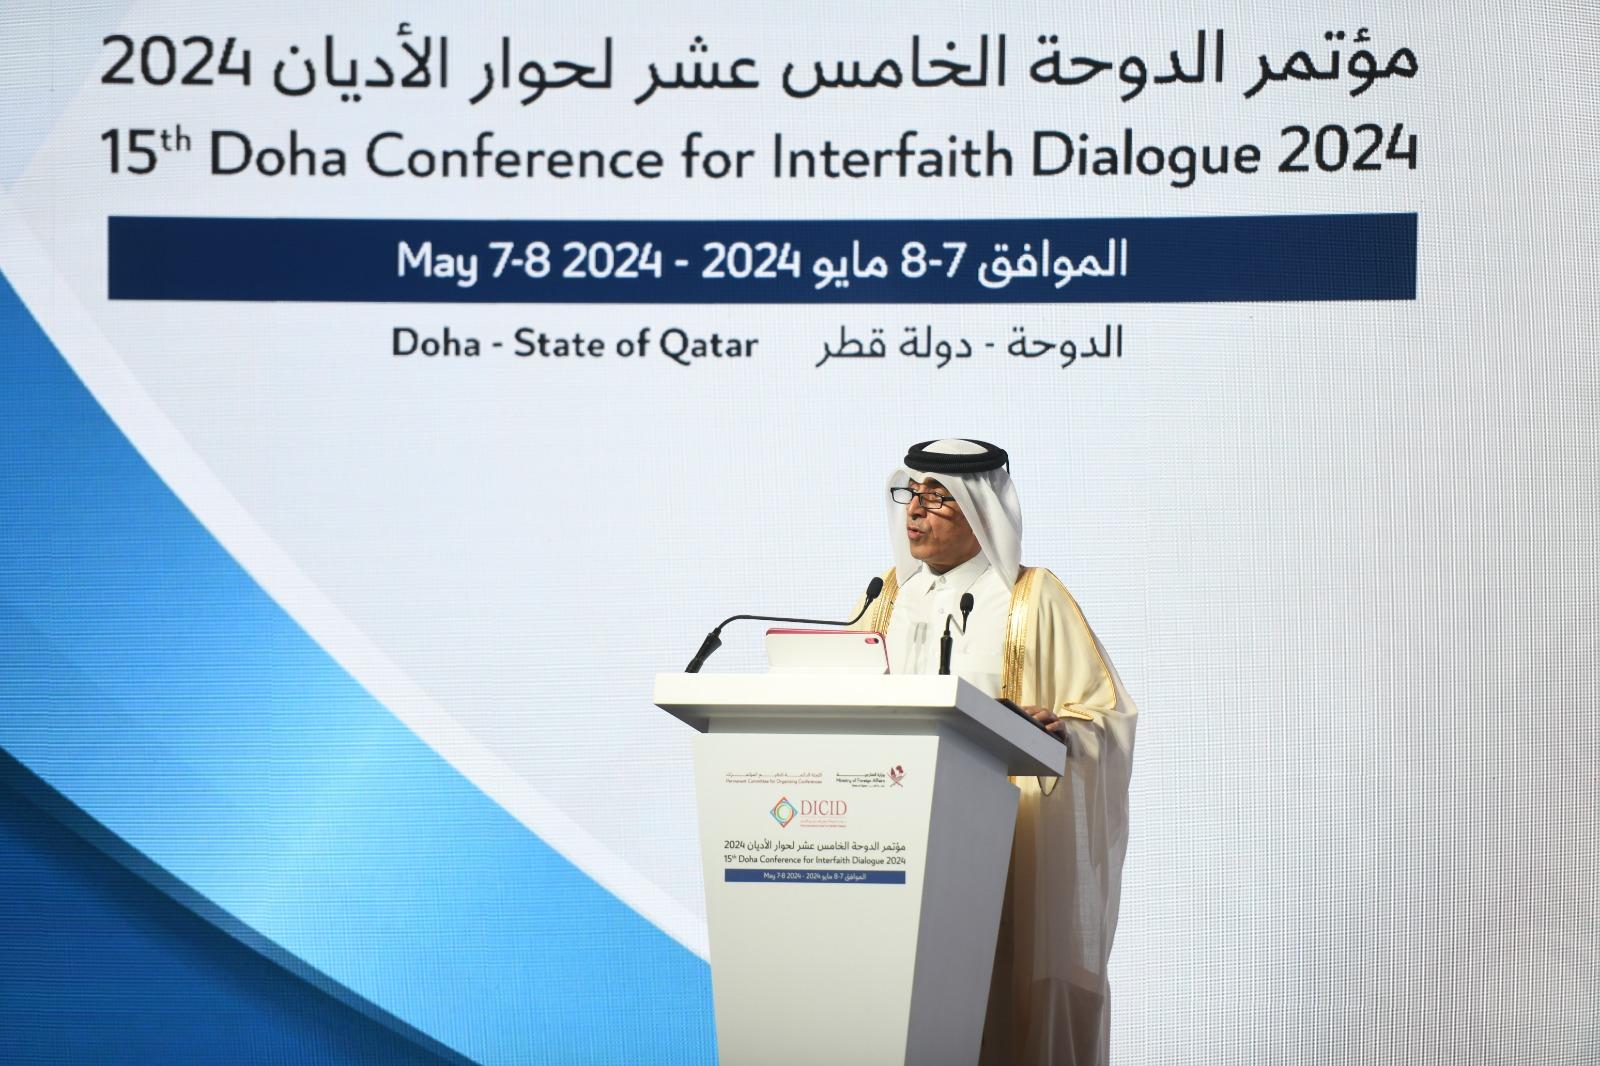 Doha lance son congrès sur le dialogue interreligieux familial